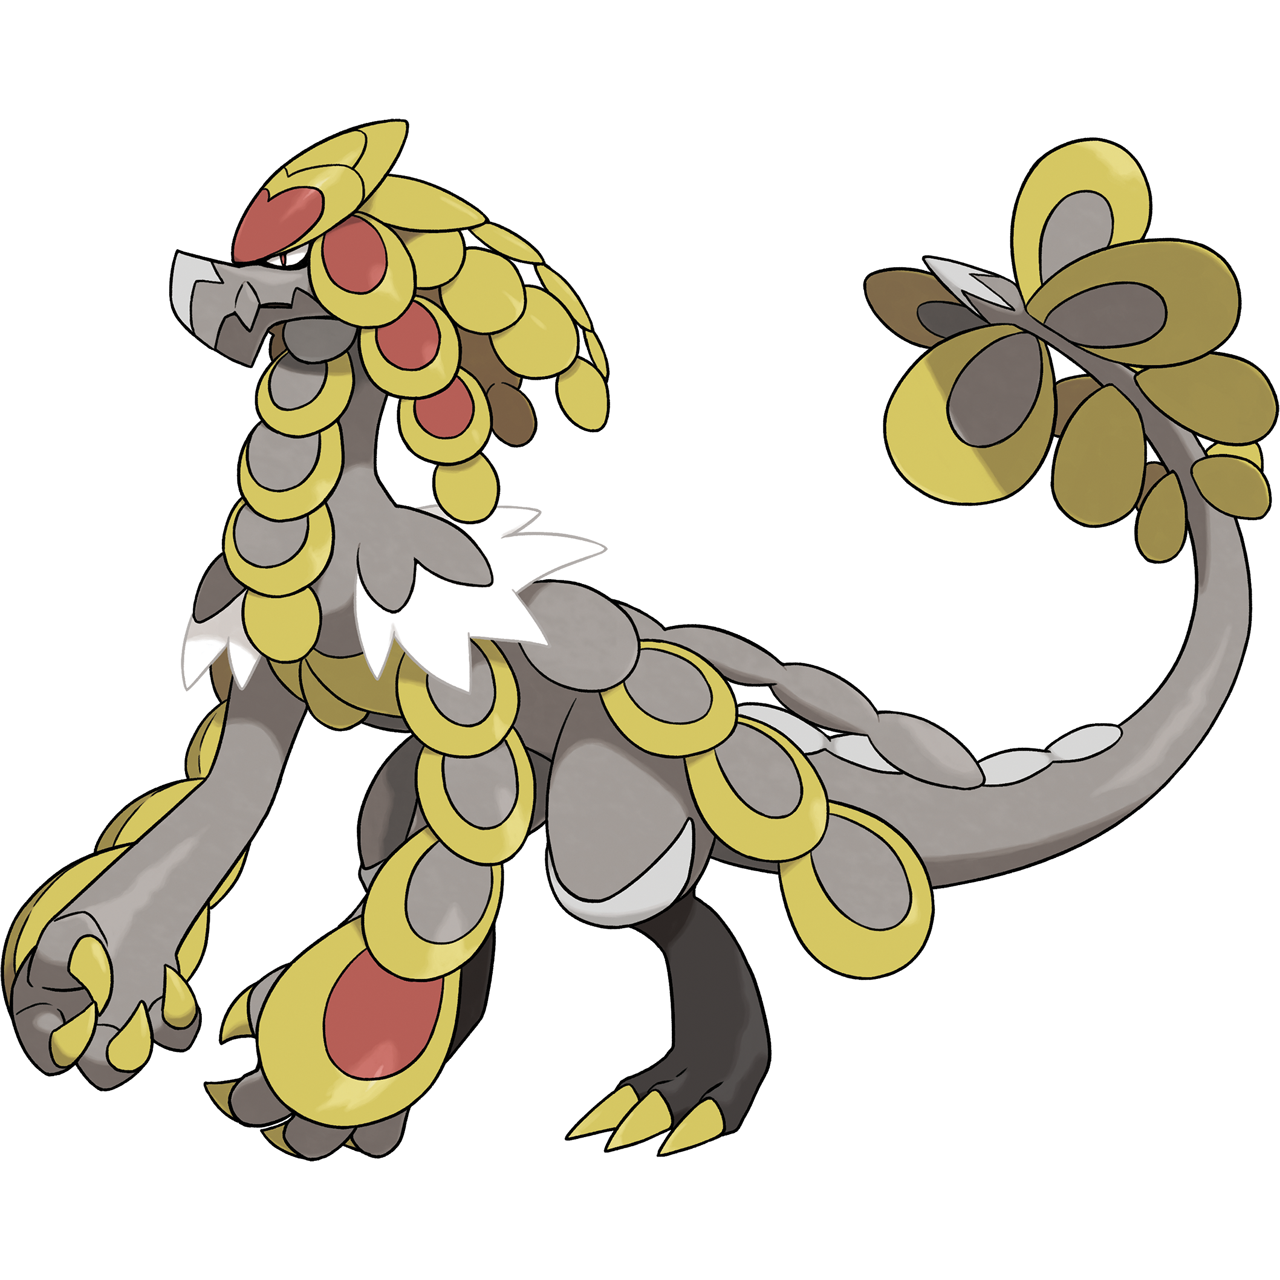 Shiny Tapu Koko, Pokémon Wiki